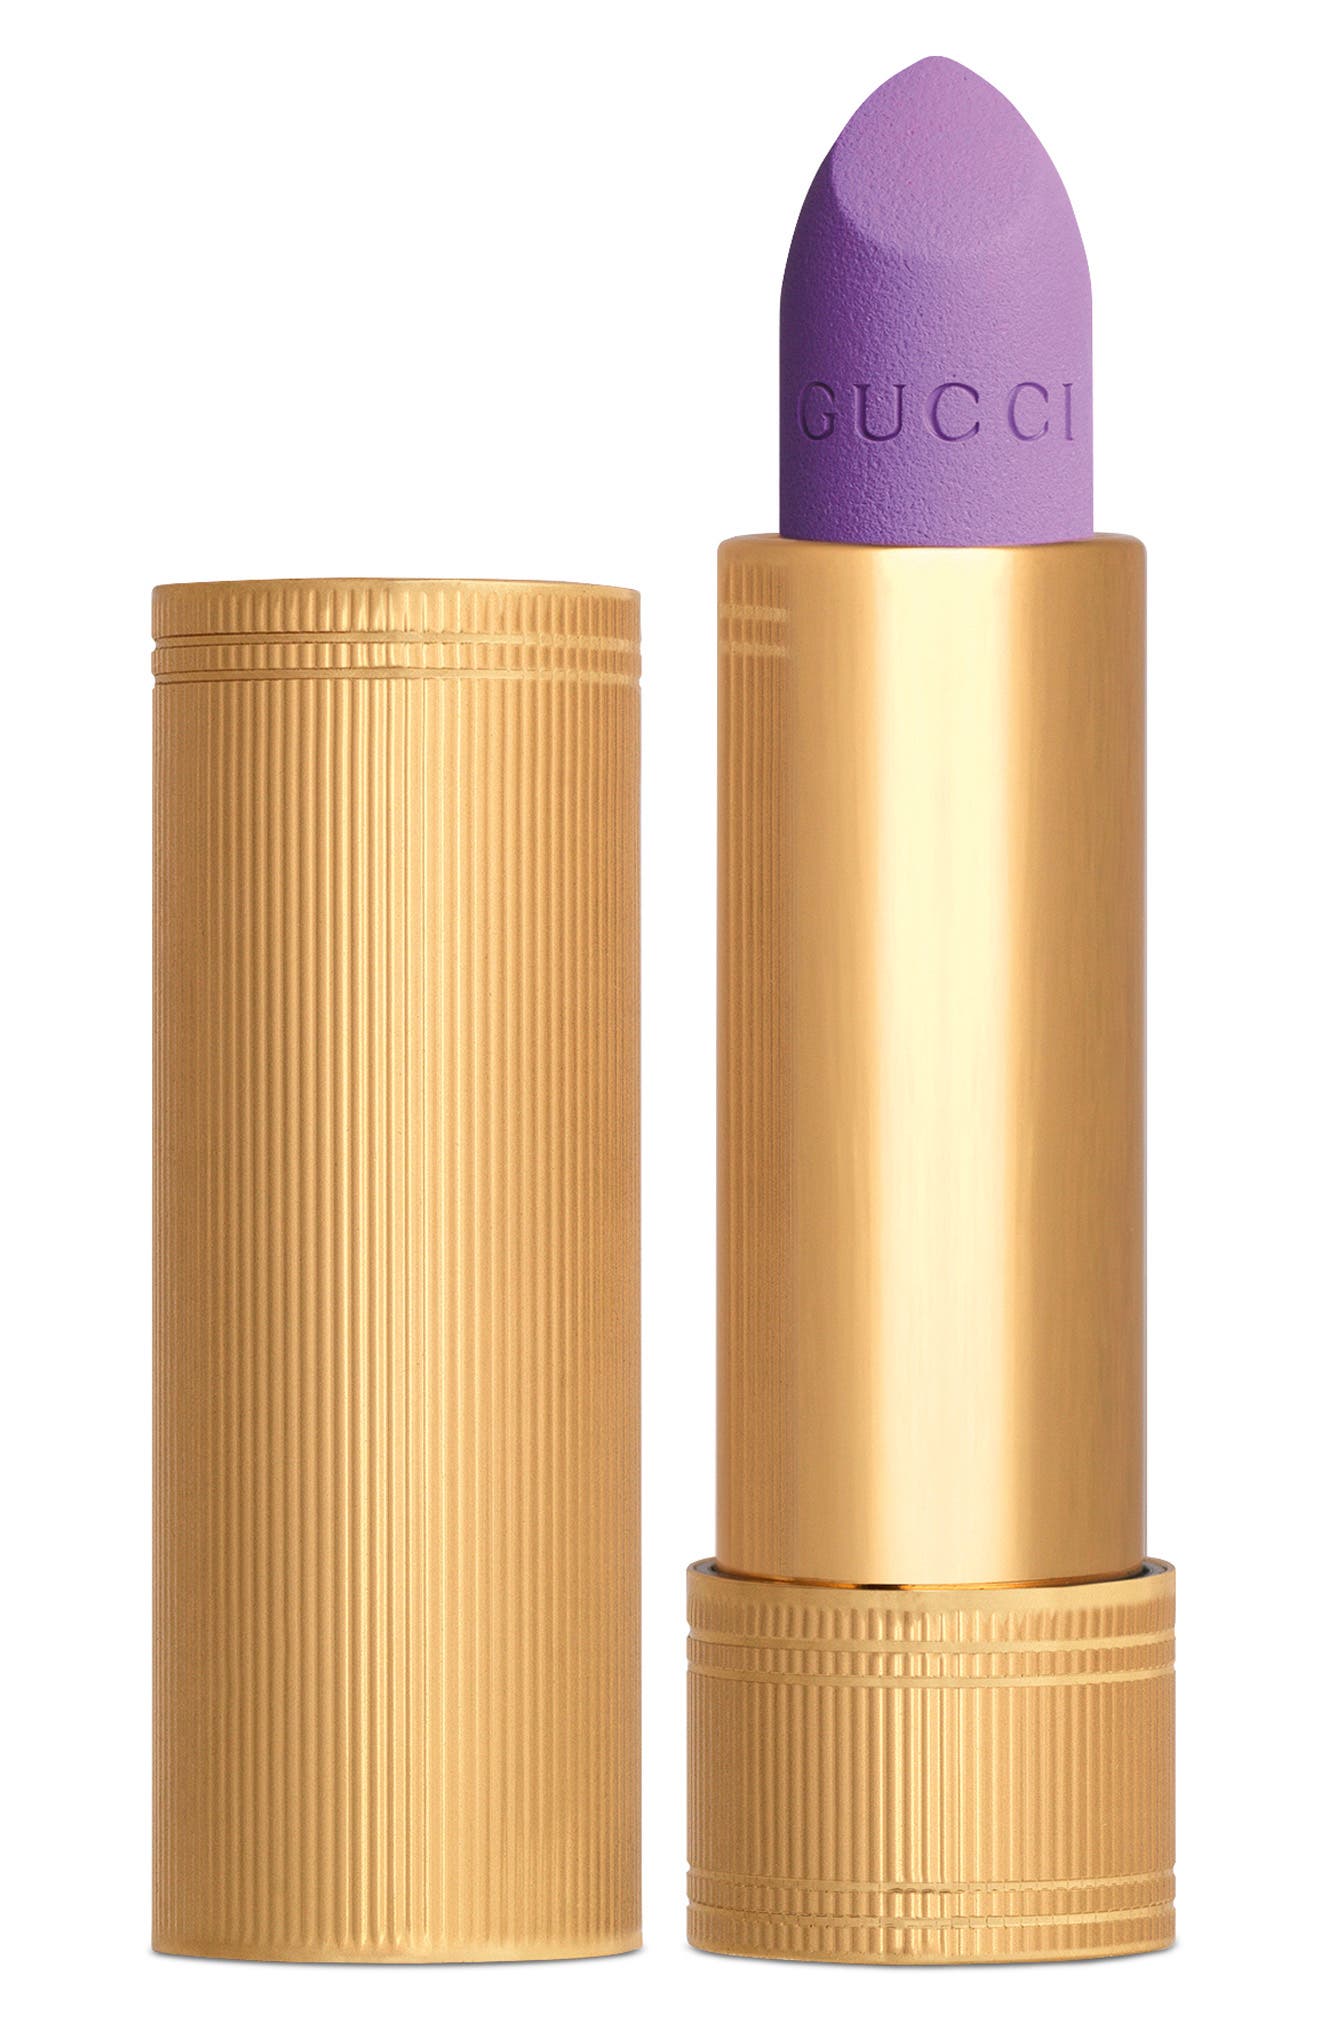 Gucci Rouge a Levres Mat Matte Lipstick in 701 Sydney Lavender at Nordstrom